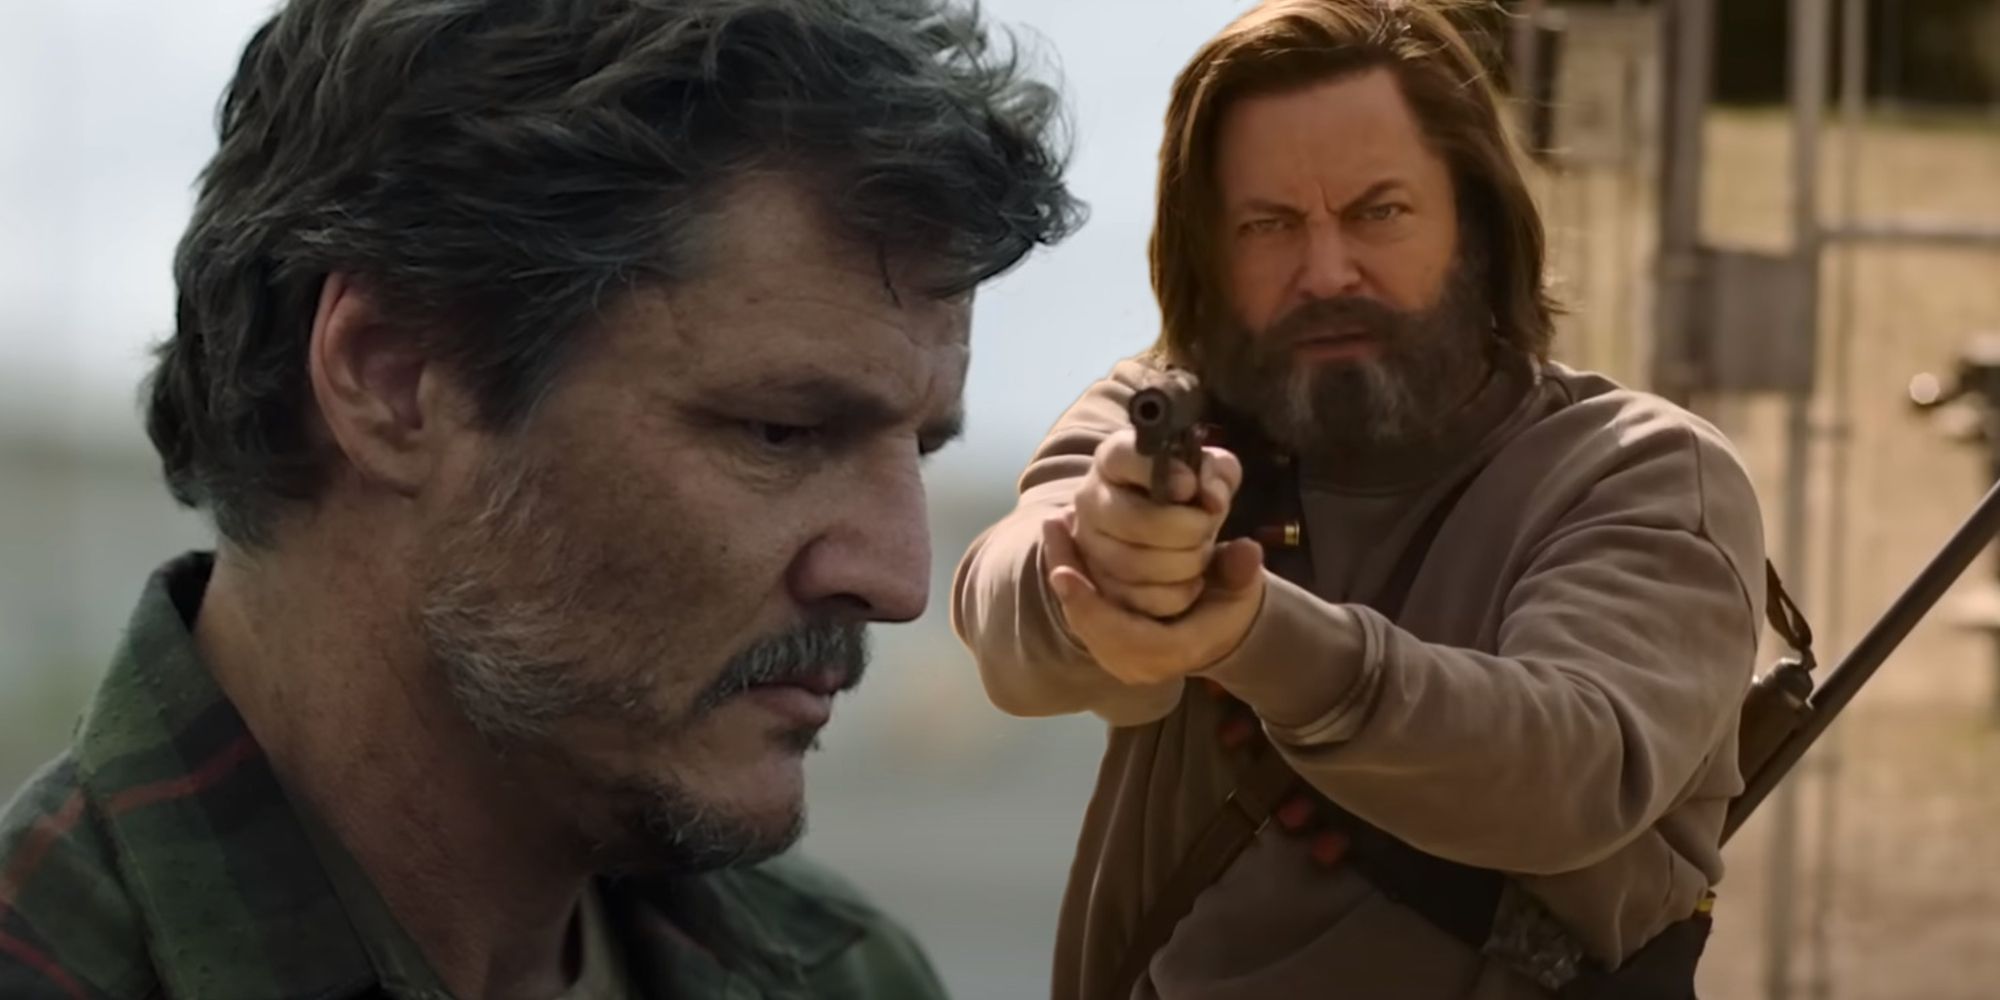 Joel de Pedro Pascal a l'air triste et Bill de Nick Offerman sort son arme dans Last of Us de HBO